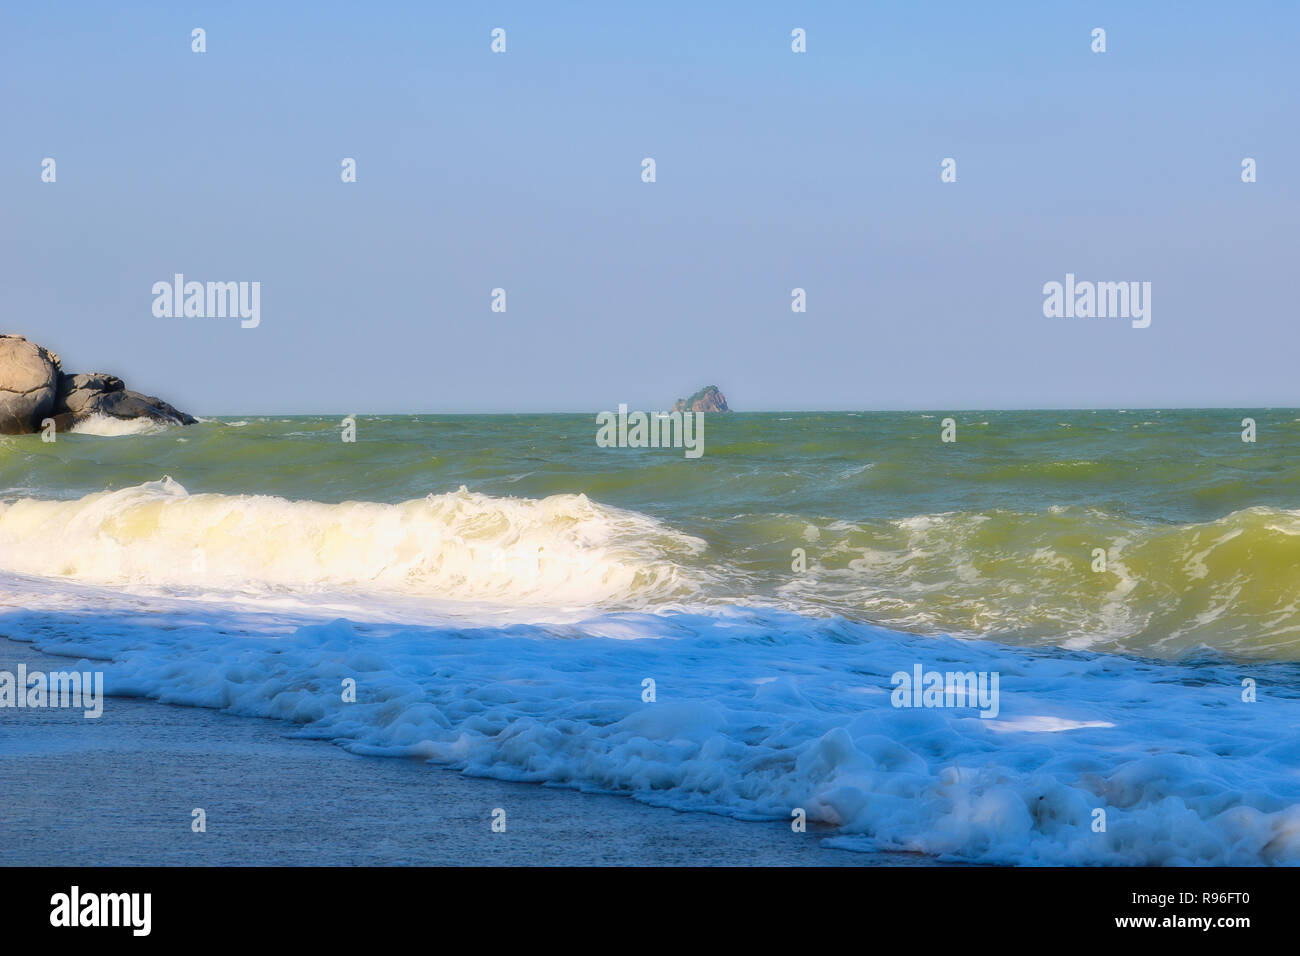 Questo paesaggio unico la foto mostra il mare Tailandese in una giornata di sole ma con un mare ondeggiante sulla spiaggia. La foto è stata scattata in Hua Hin in Thailandia Foto Stock